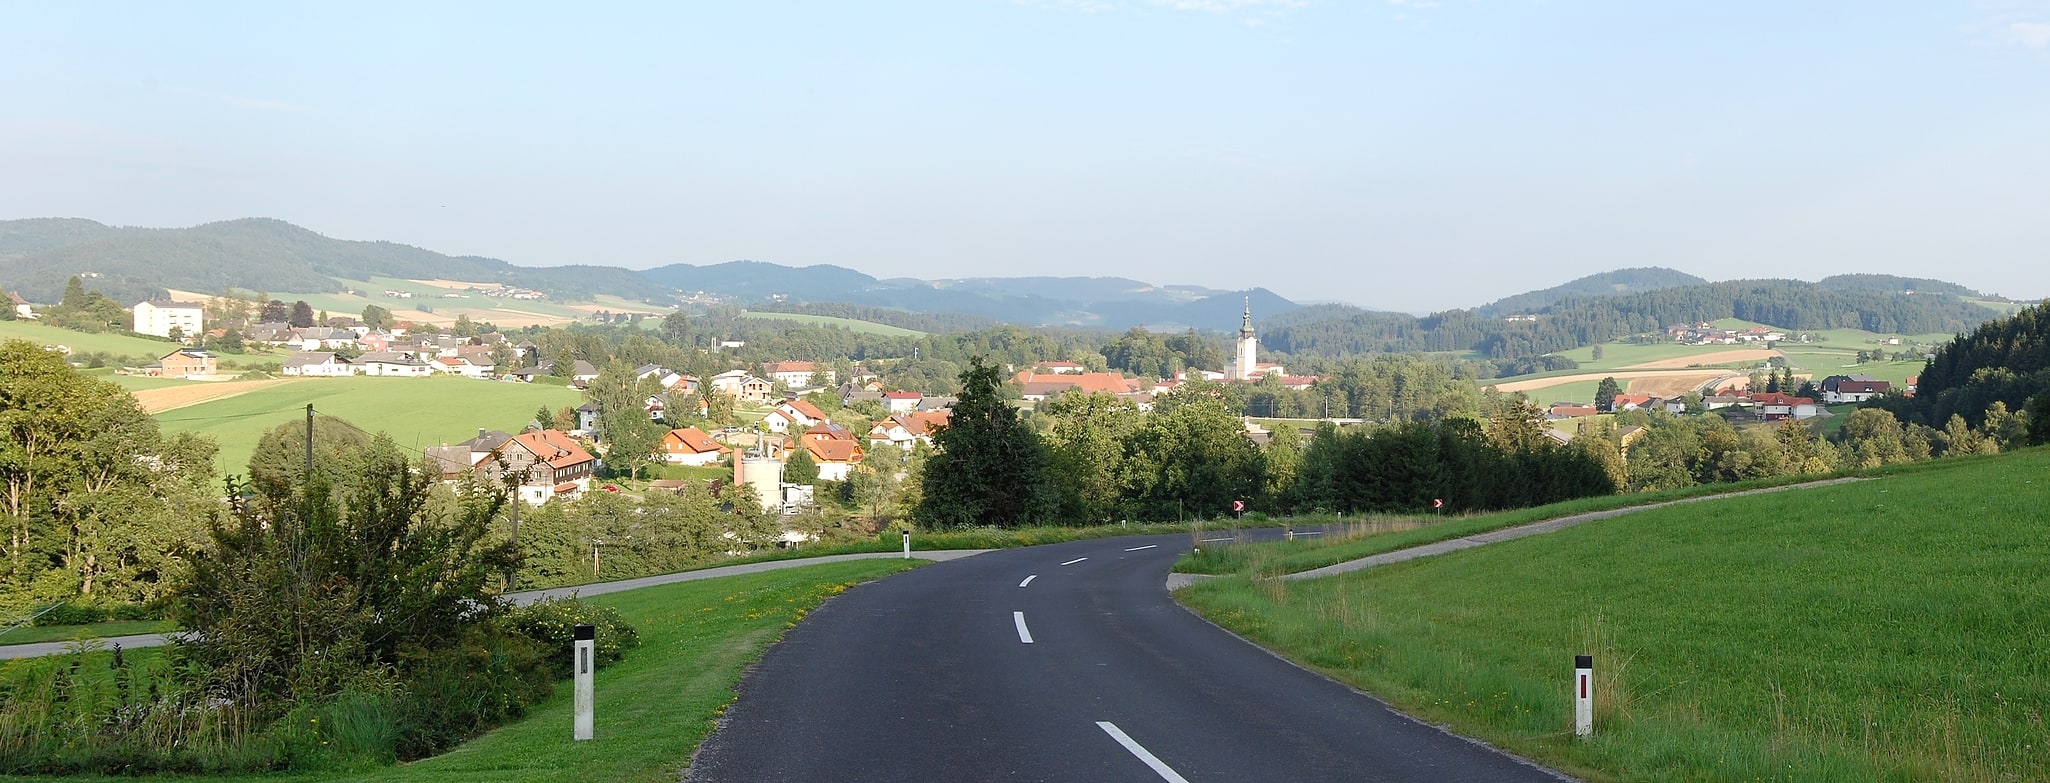 Schlägl, Austria